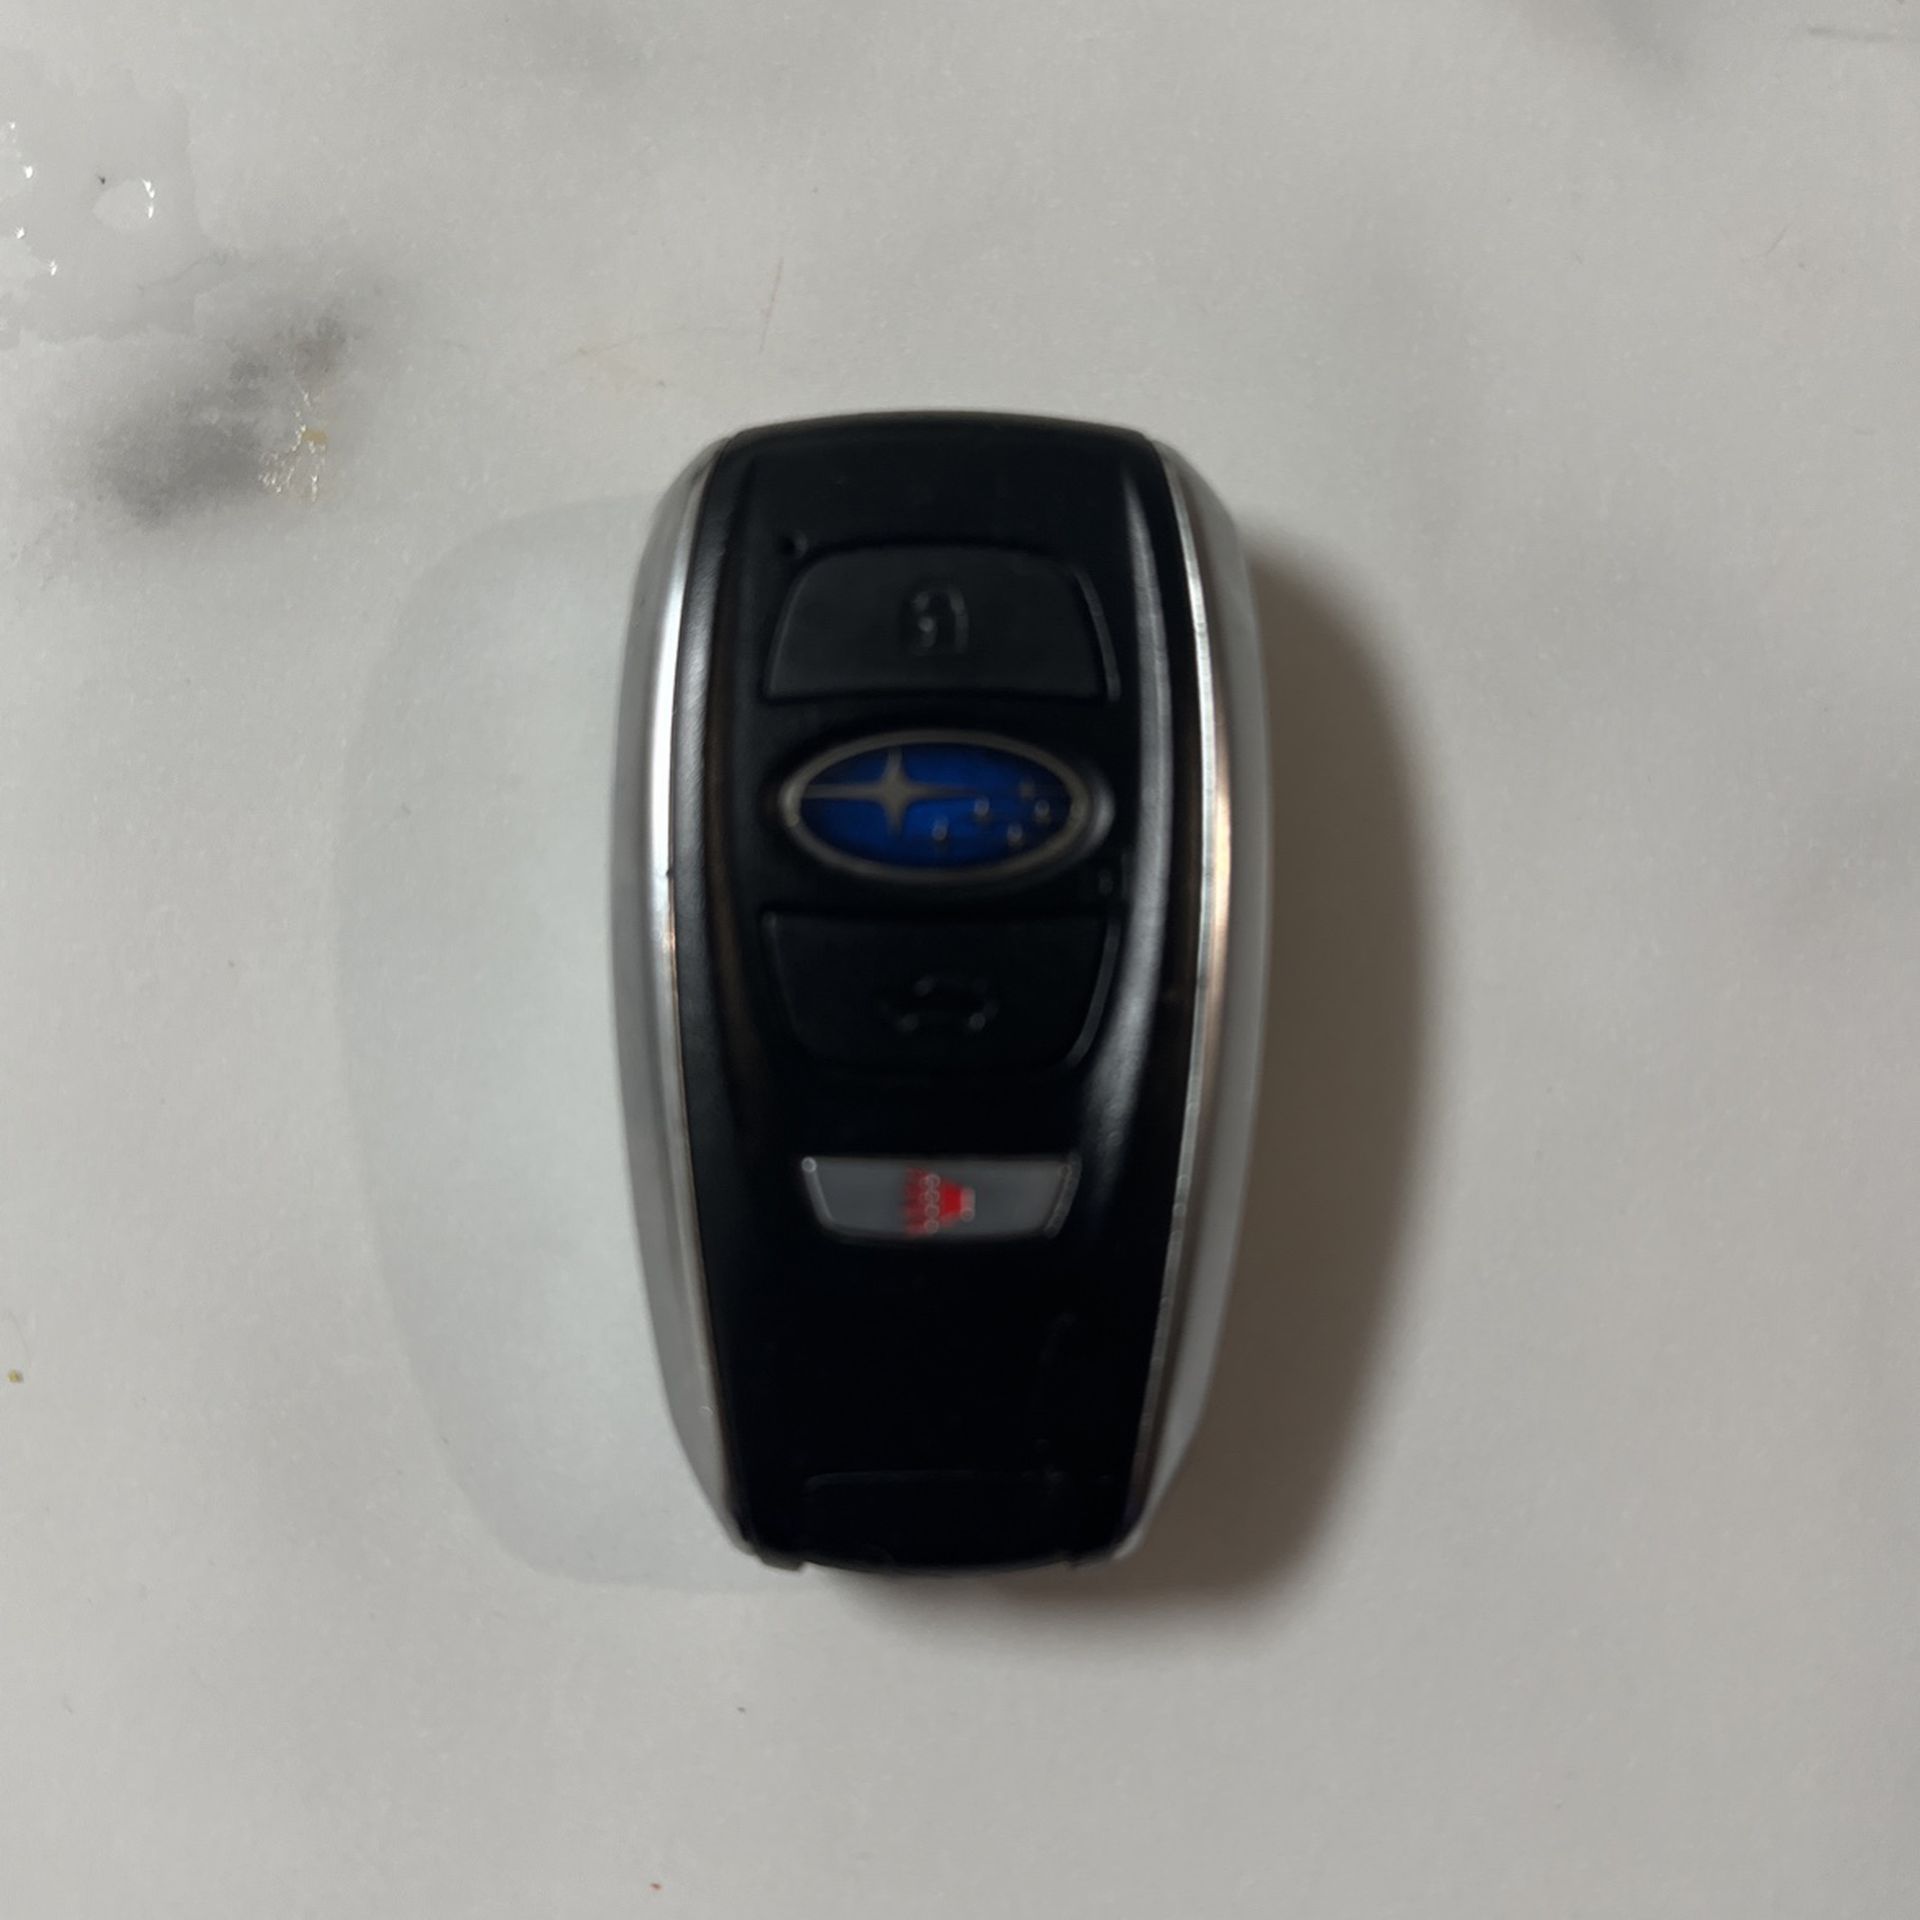 Subaru Key